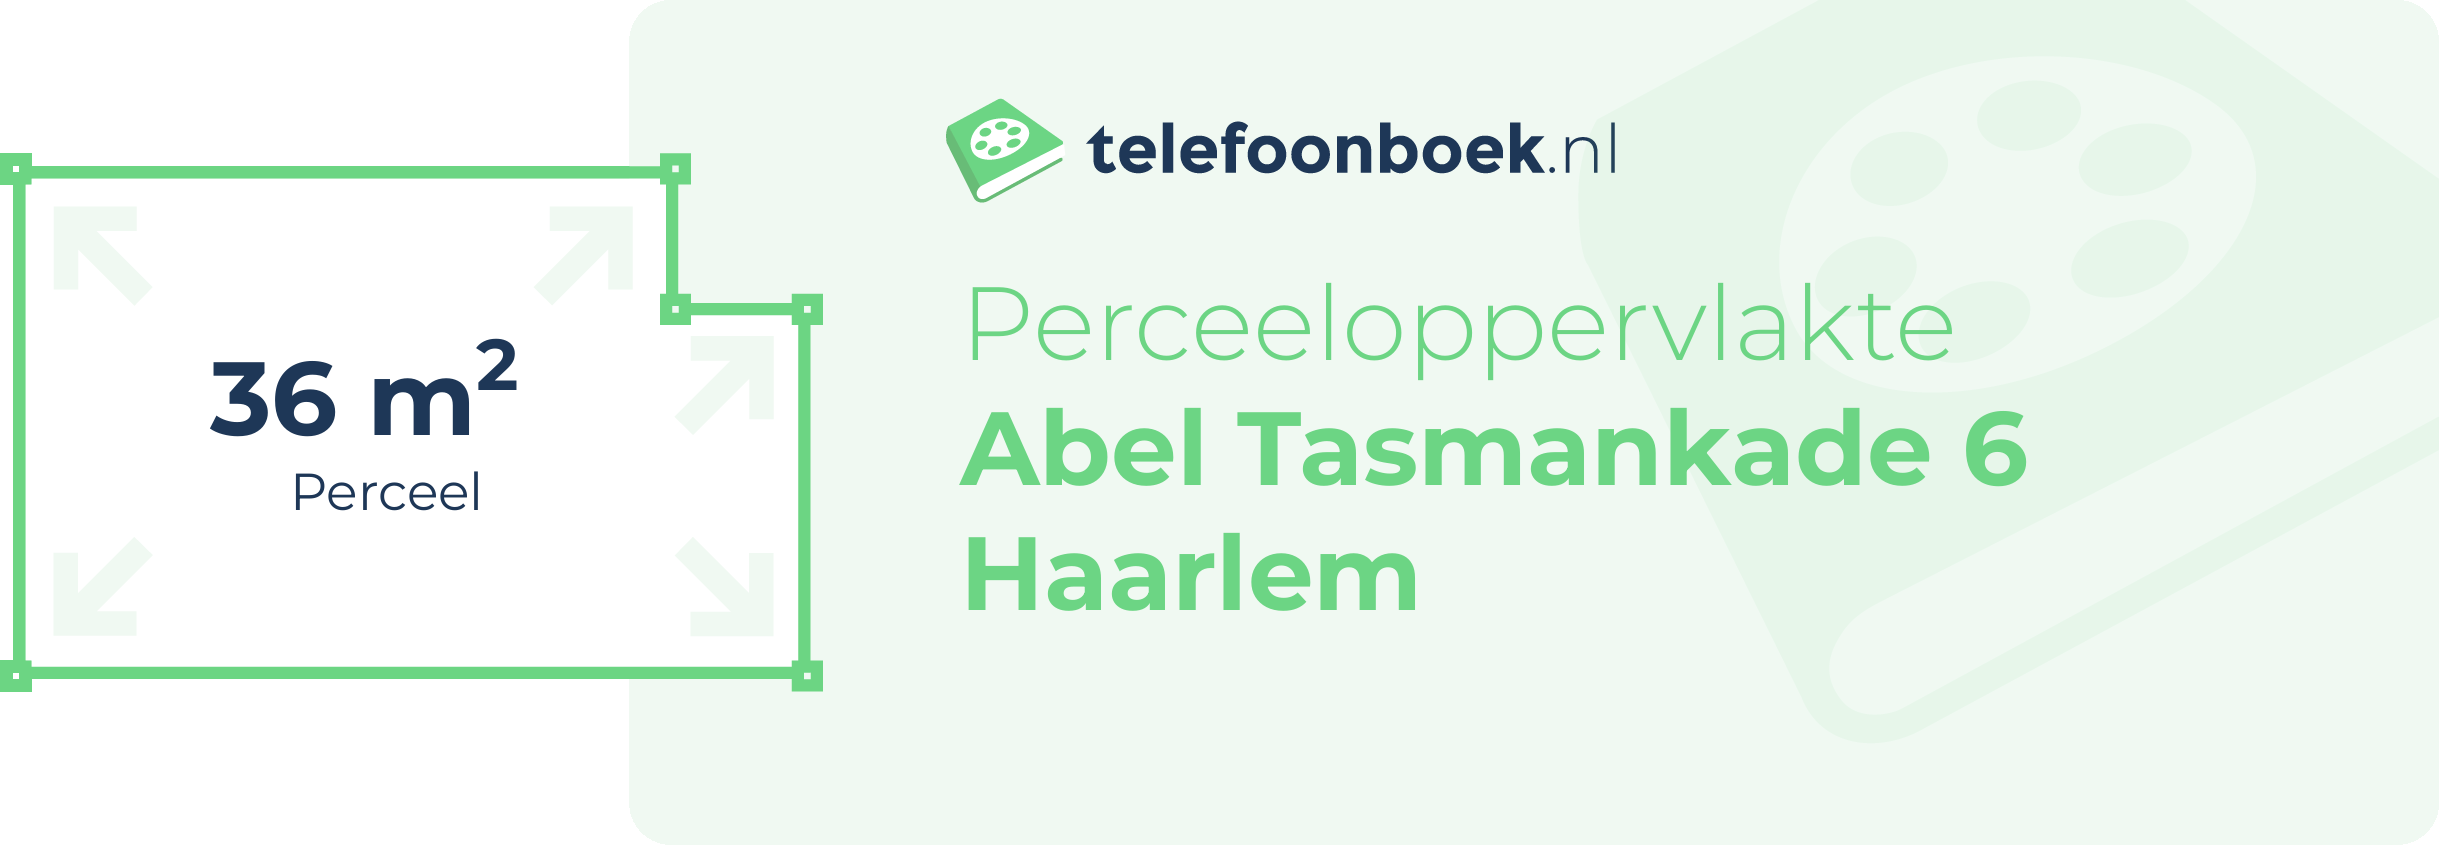 Perceeloppervlakte Abel Tasmankade 6 Haarlem